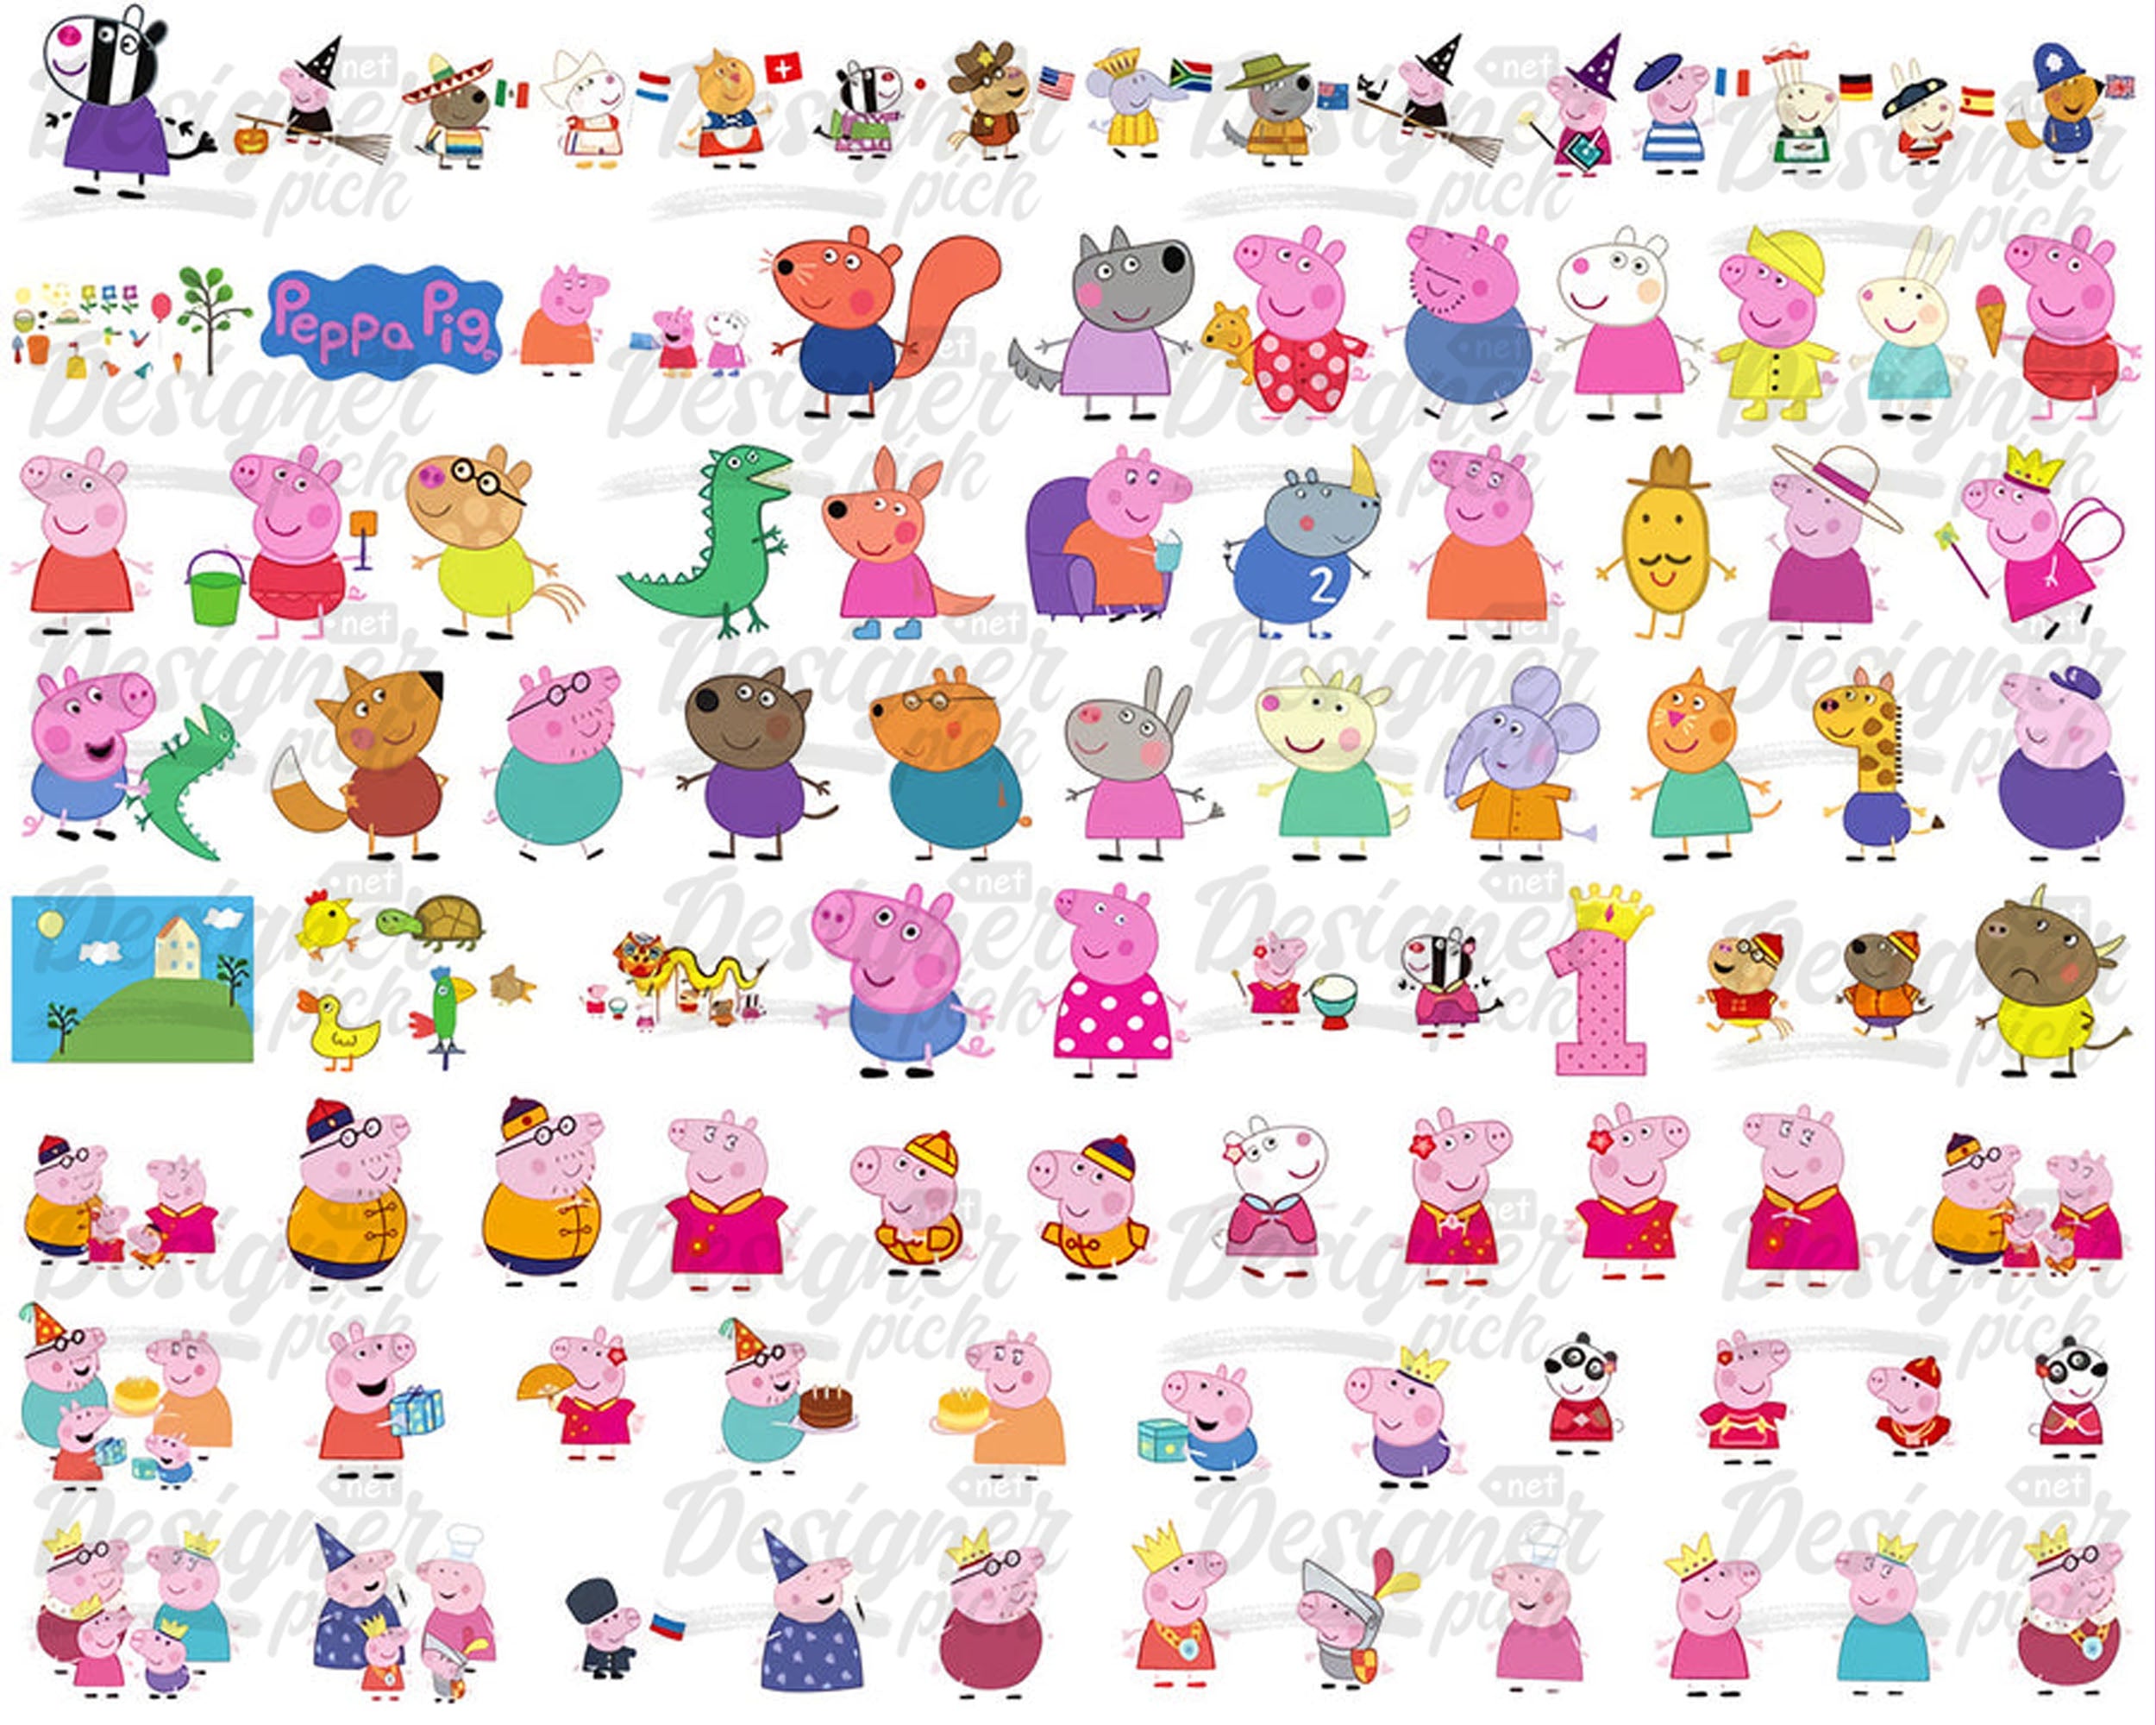 1400+ Peppa Pig Svg bundle  - Instant Download